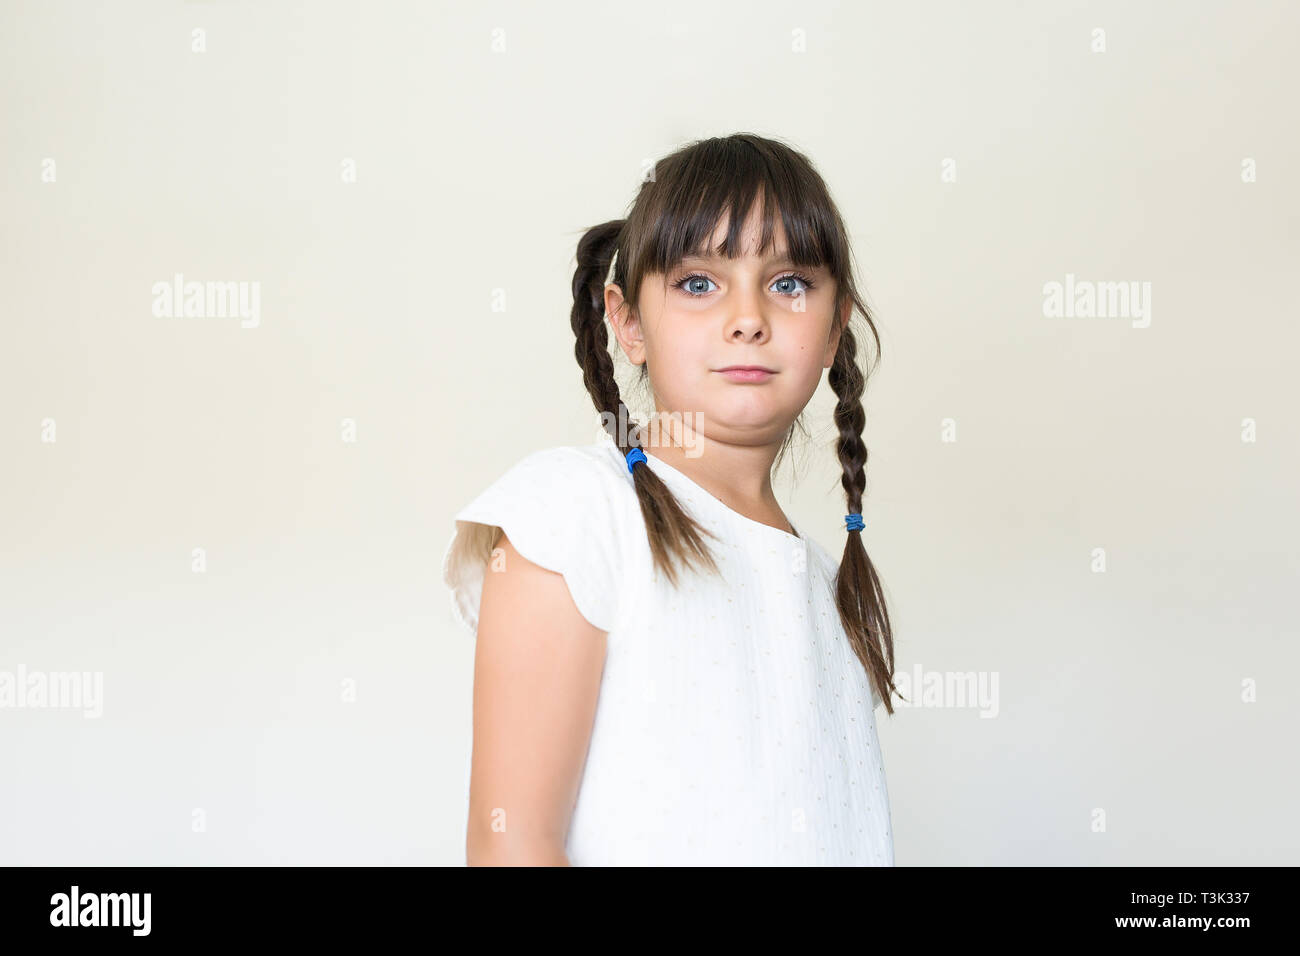 6-7 Jahre alten schönen Kind an der Kamera mit einem leeren Ausdruck Stockfoto